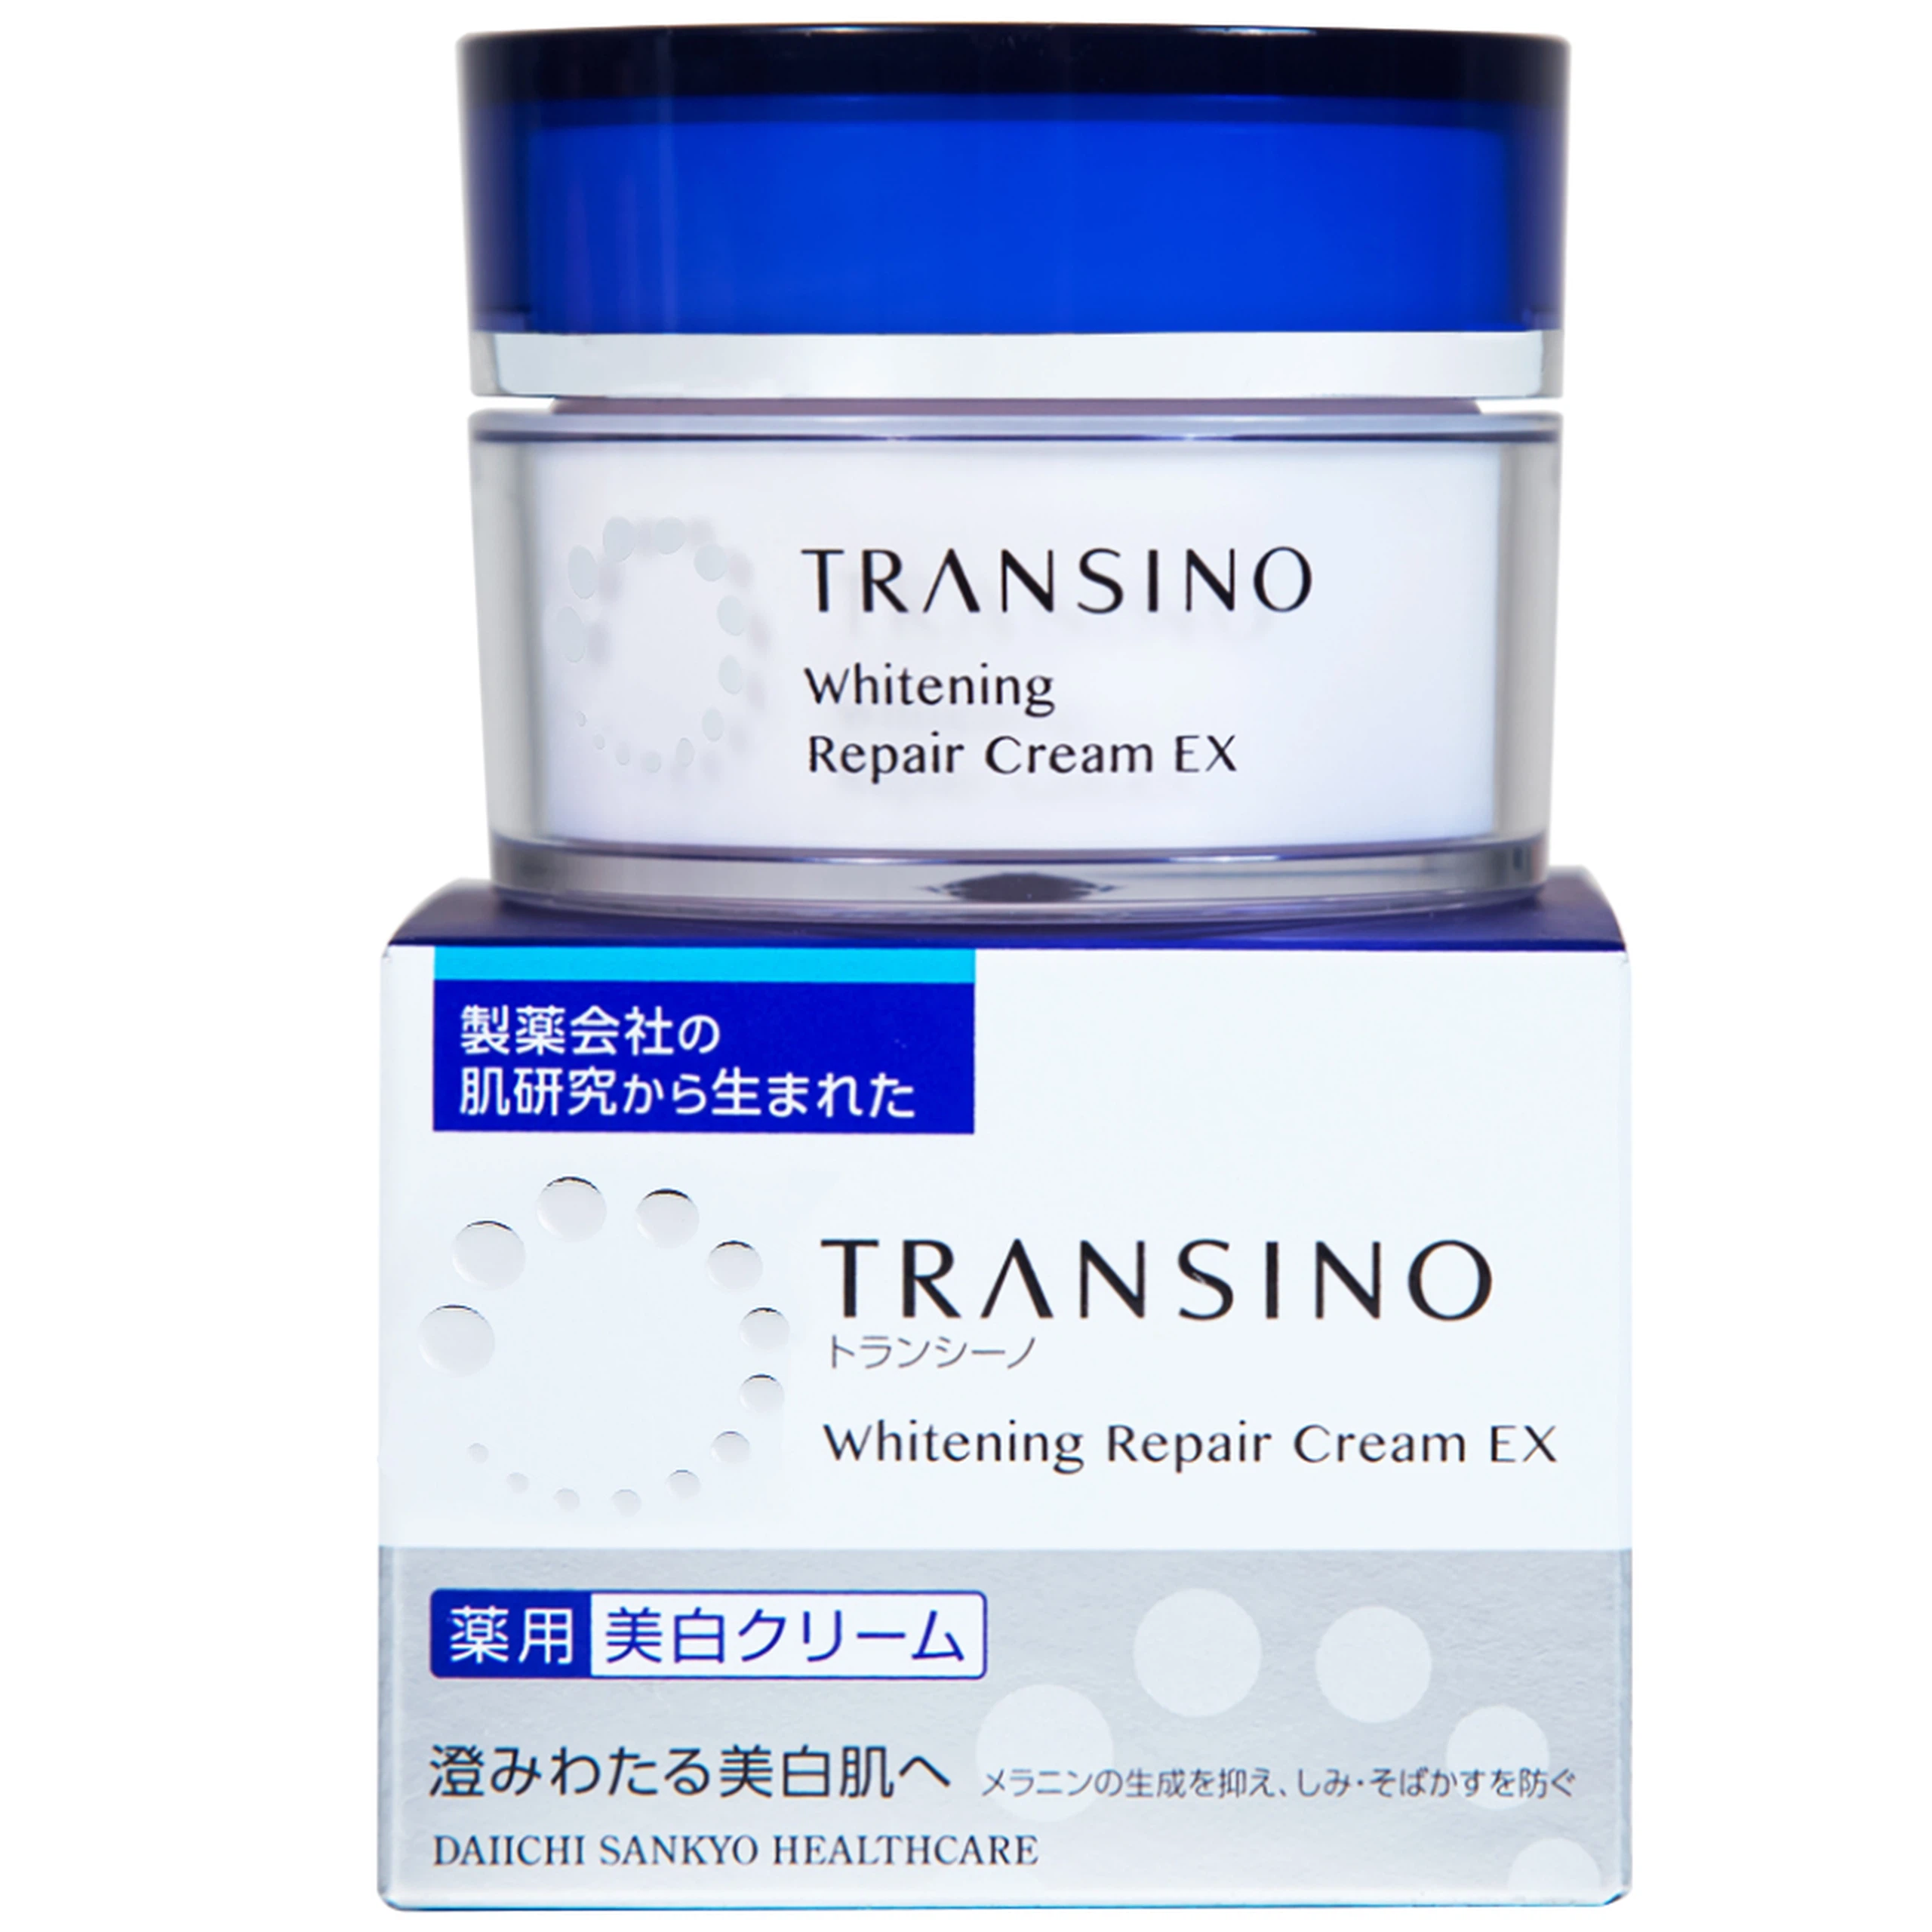 Kem mặt nạ Transino Whitening Repair Cream EX phục hồi dưỡng trắng da dành cho da bị tổn thương (35g)